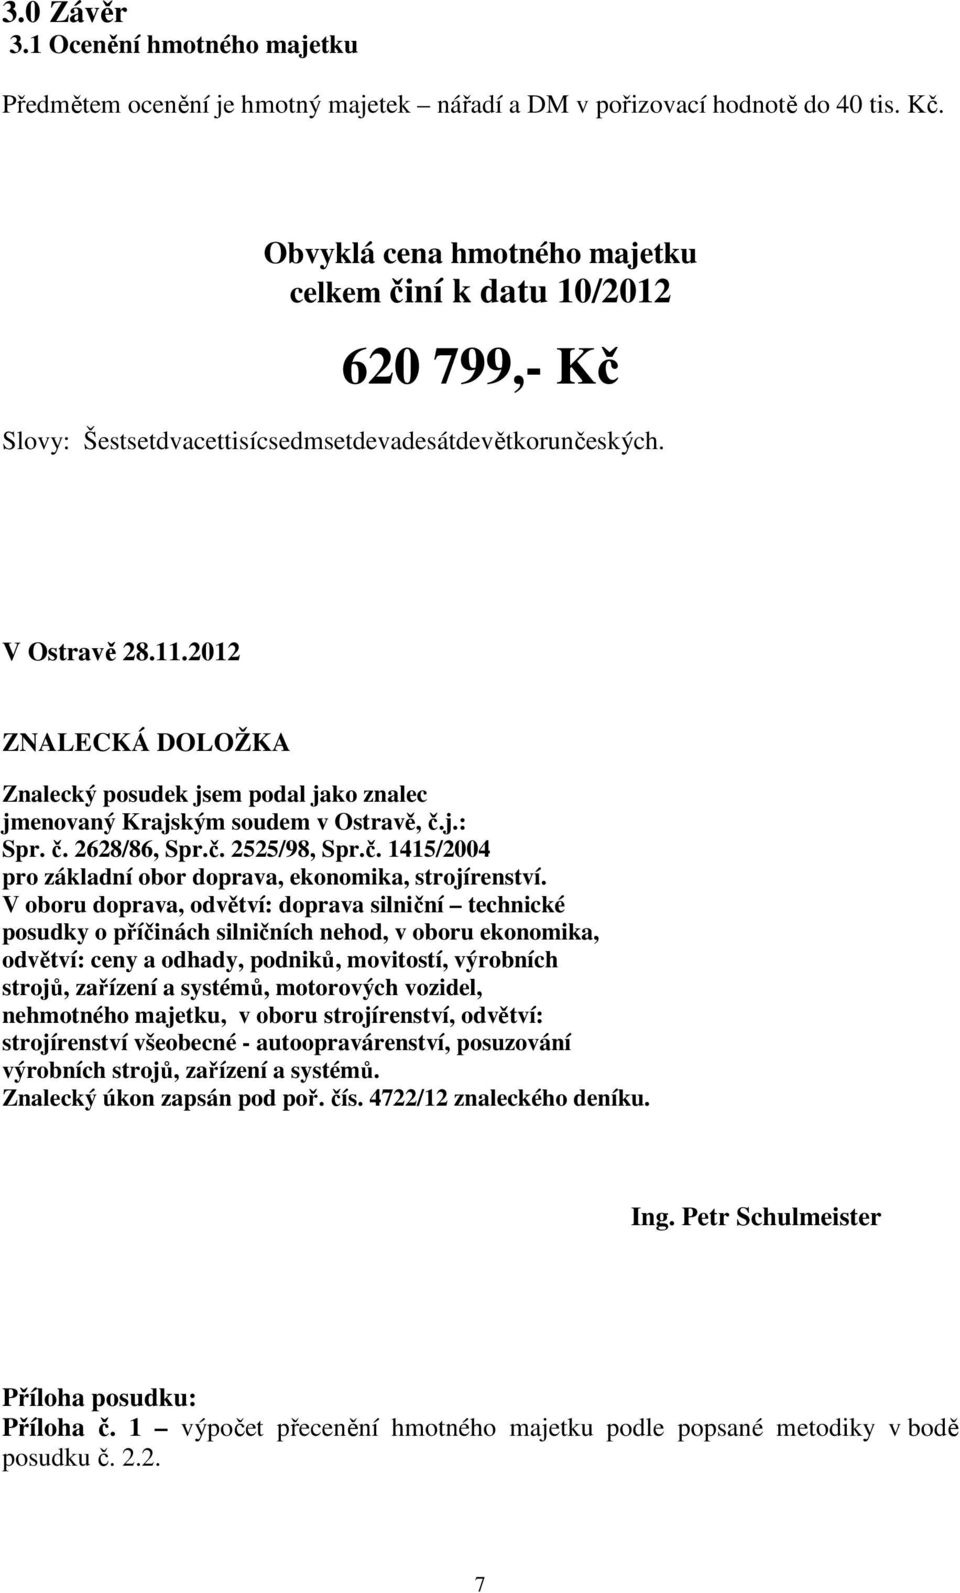 2012 ZNALECKÁ DOLOŽKA Znalecký posudek jsem podal jako znalec jmenovaný Krajským soudem v Ostravě, č.j.: Spr. č. 2628/86, Spr.č. 2525/98, Spr.č. 1415/2004 pro základní obor doprava, ekonomika, strojírenství.